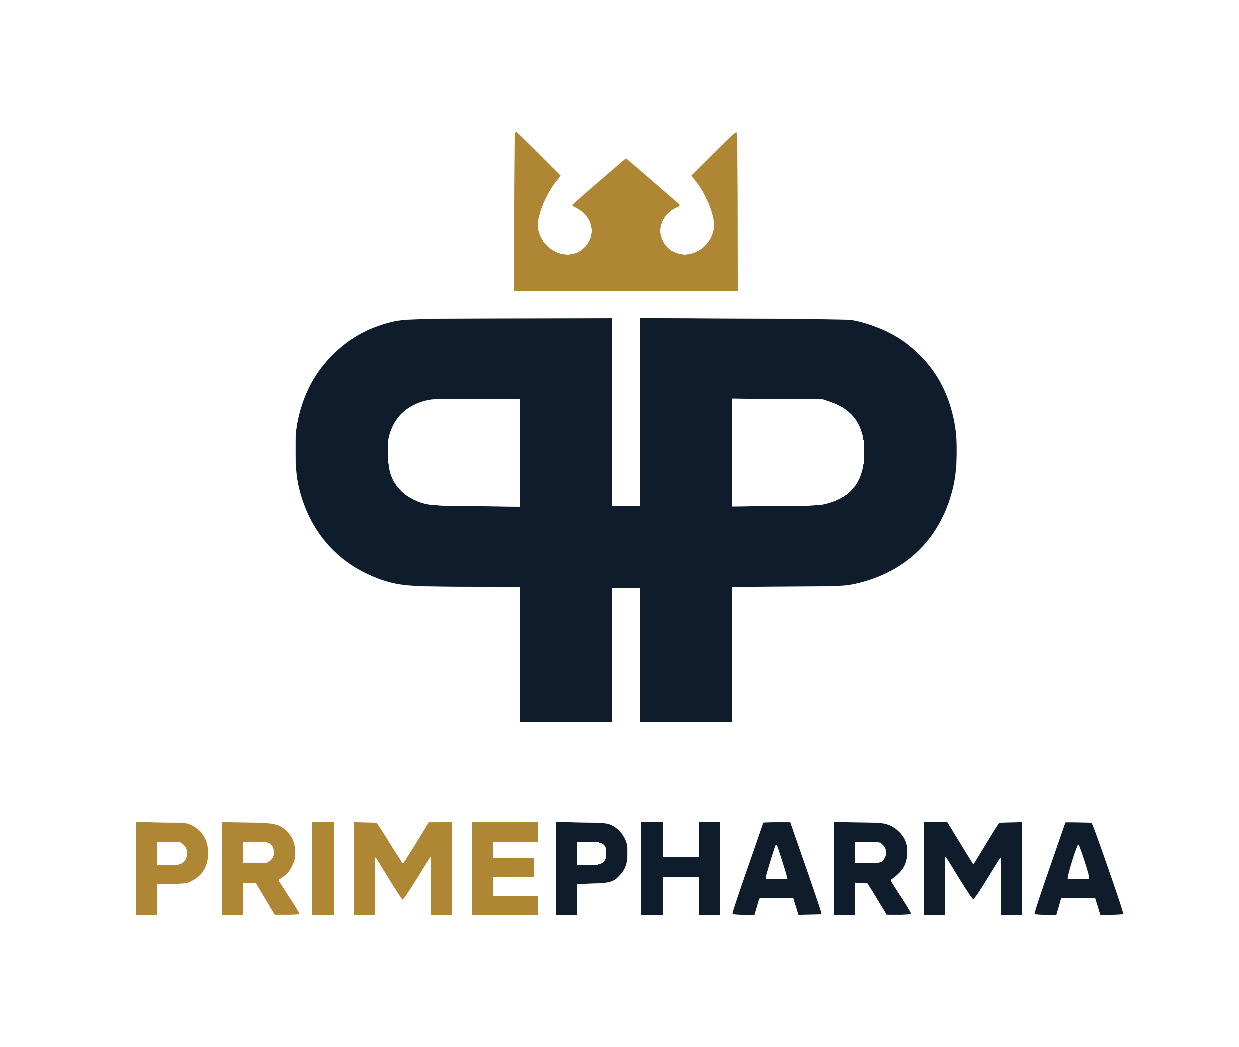 Prime Pharma kopen